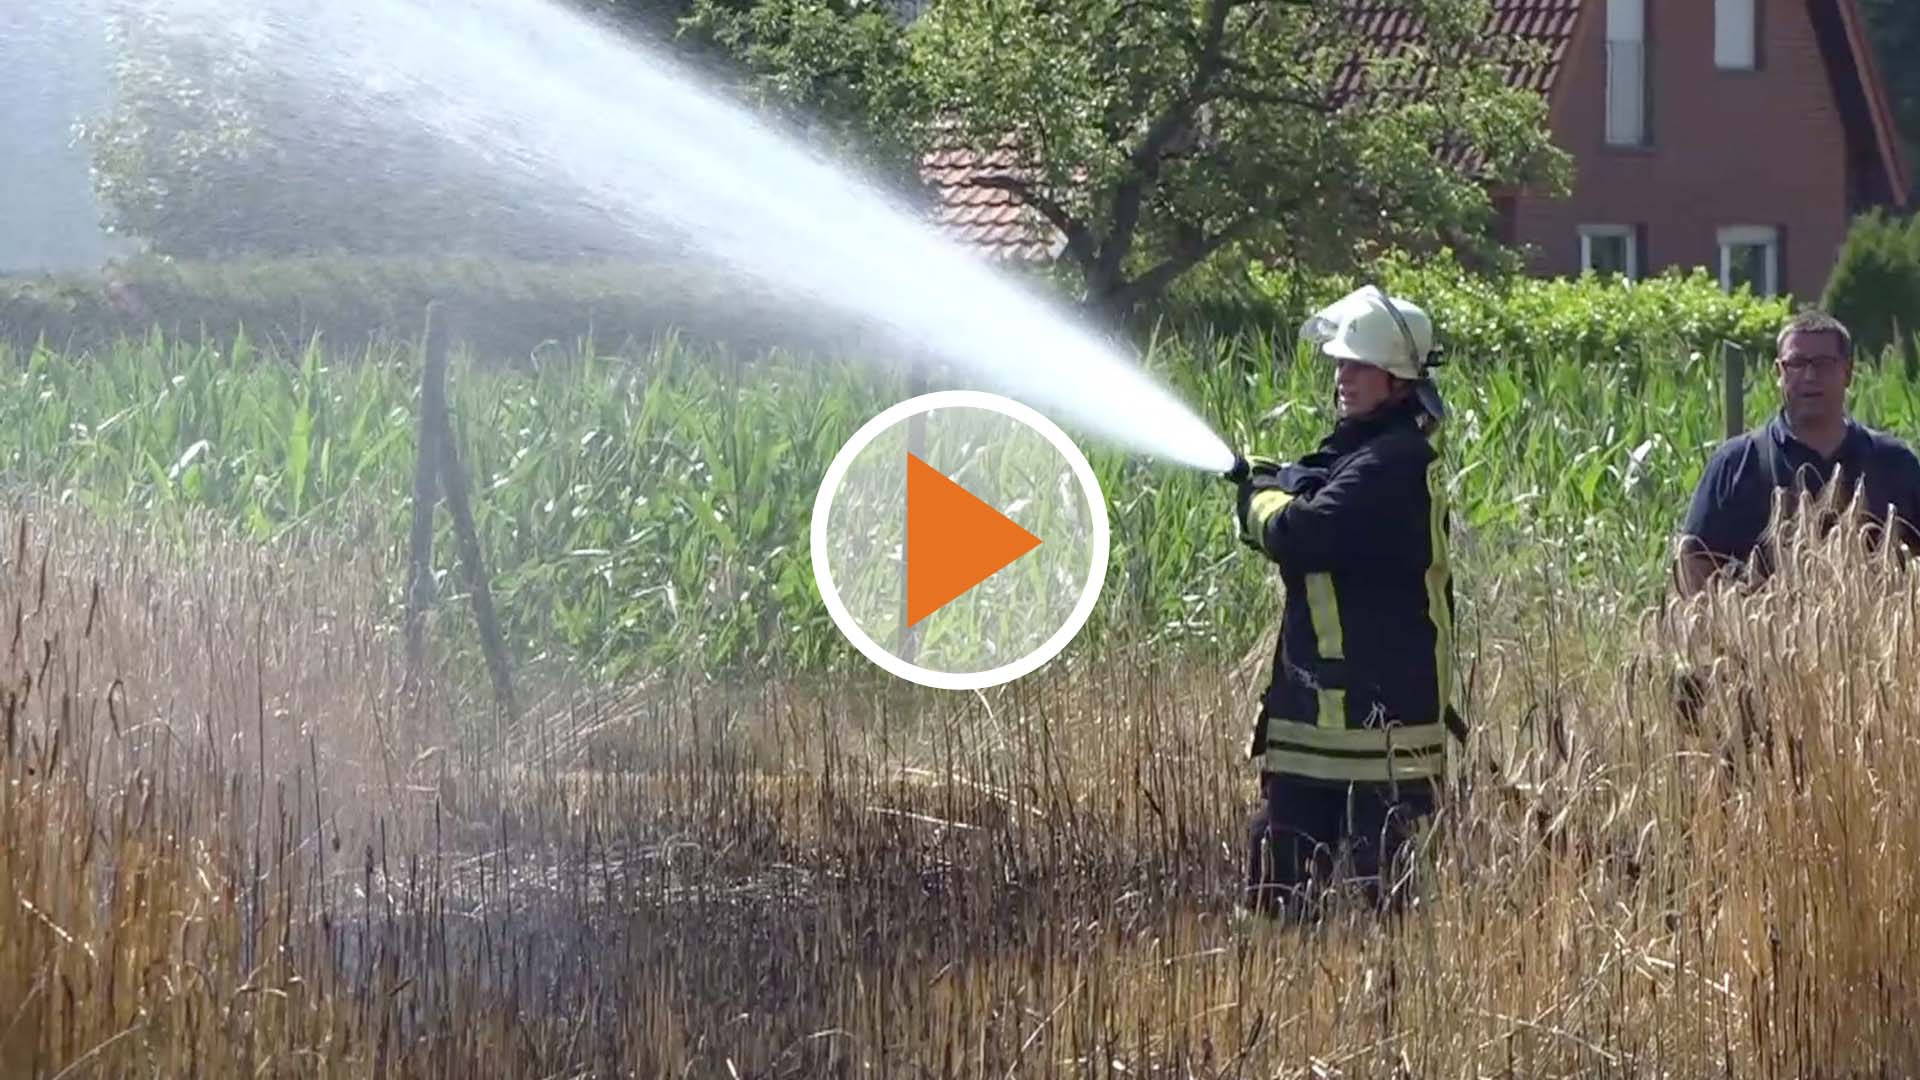 Screen_Nachbarn helfen Feuerwehr bei Feldbrand